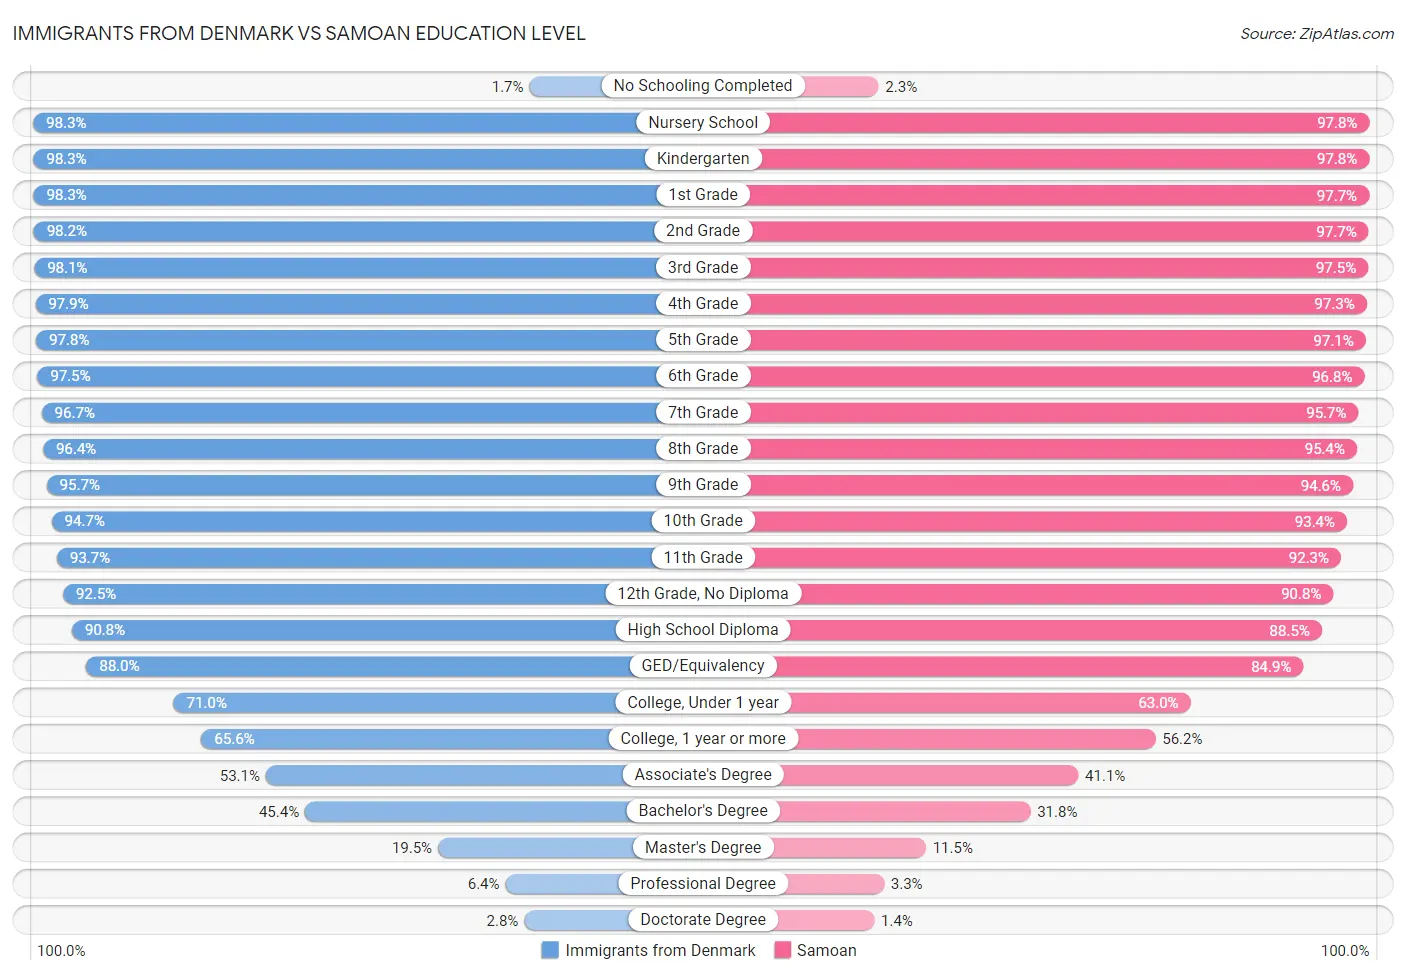 Immigrants from Denmark vs Samoan Education Level